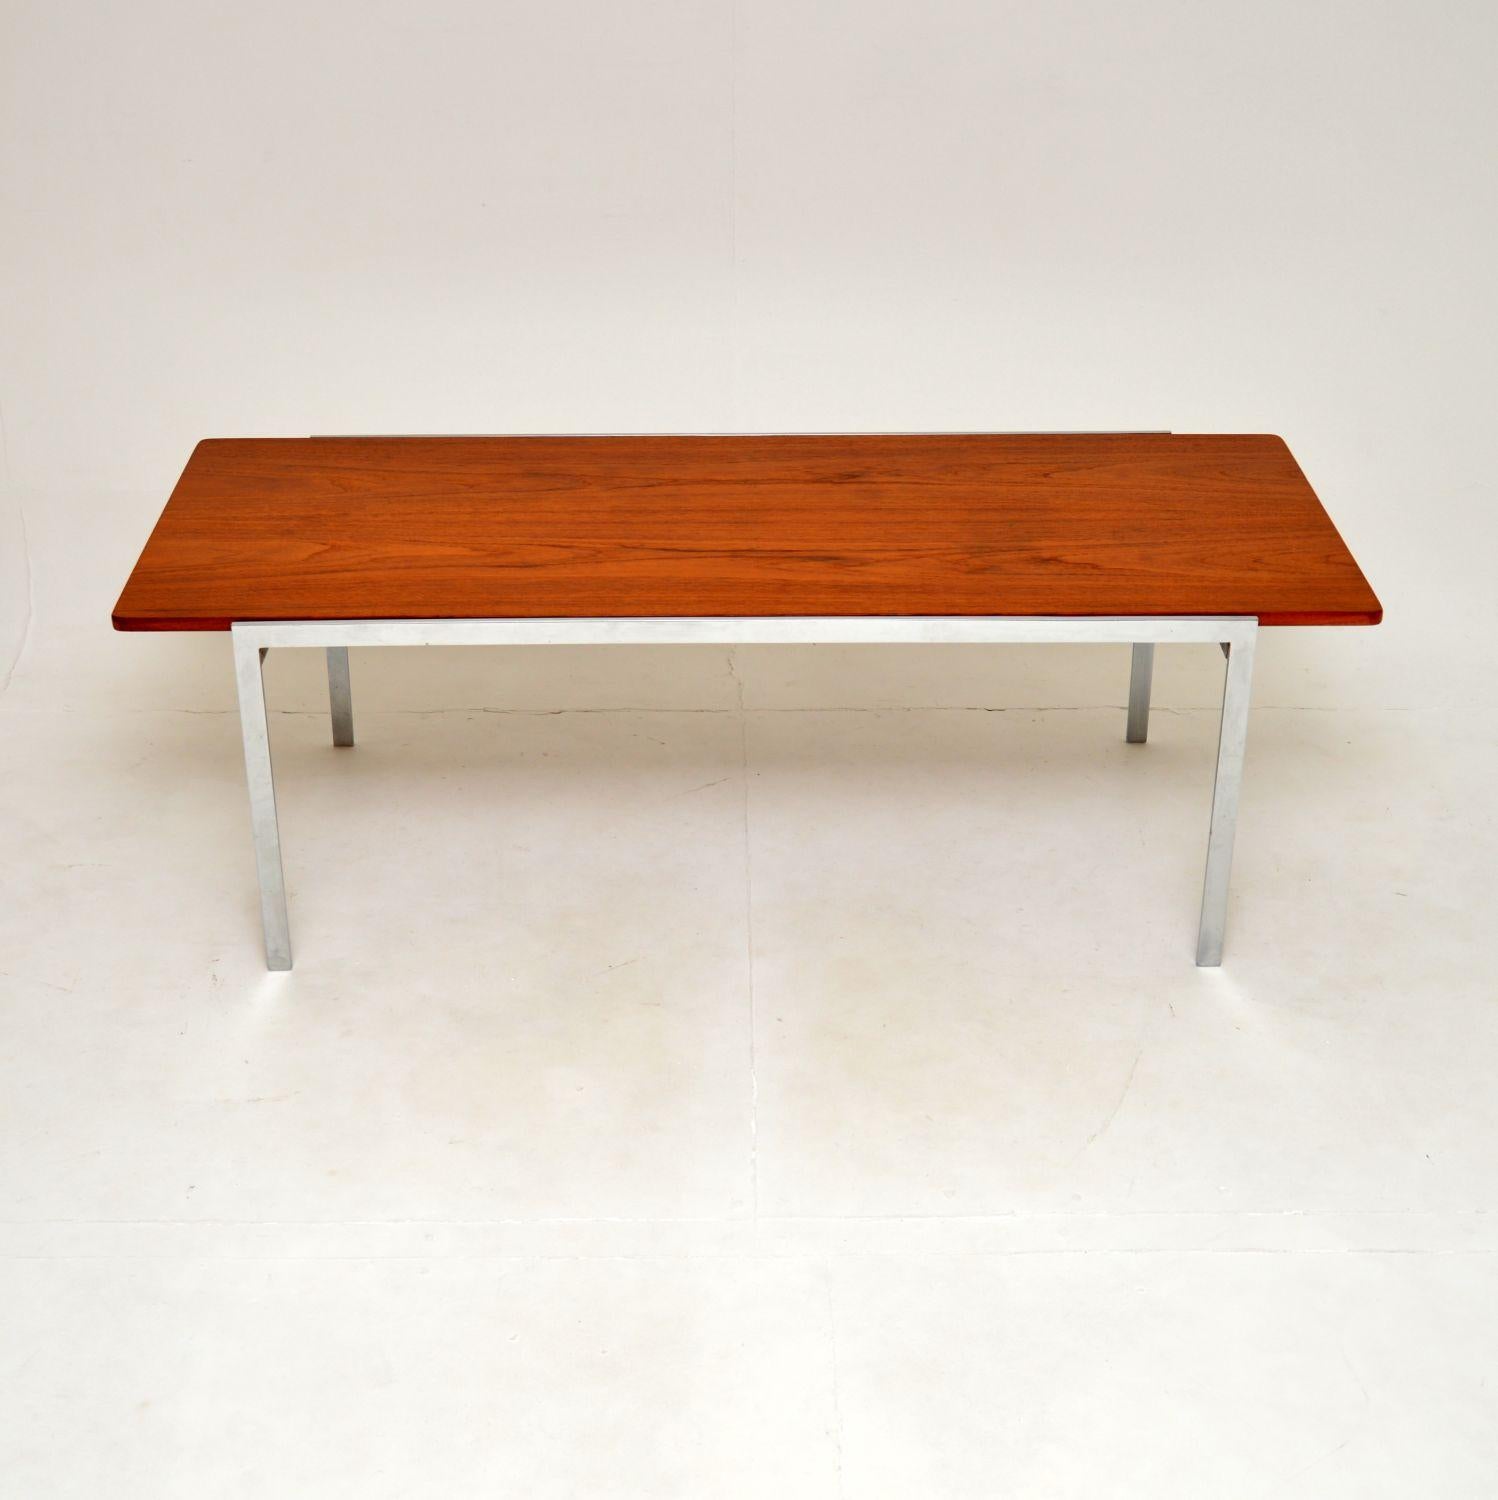 Une élégante et très rare table basse danoise vintage en teck et chrome par Arne Jacobsen. Fabriqué par Fritz Hansen, il date des années 1960.

Il est d'une superbe qualité, d'une taille importante et impressionnante. Le plateau en teck présente des